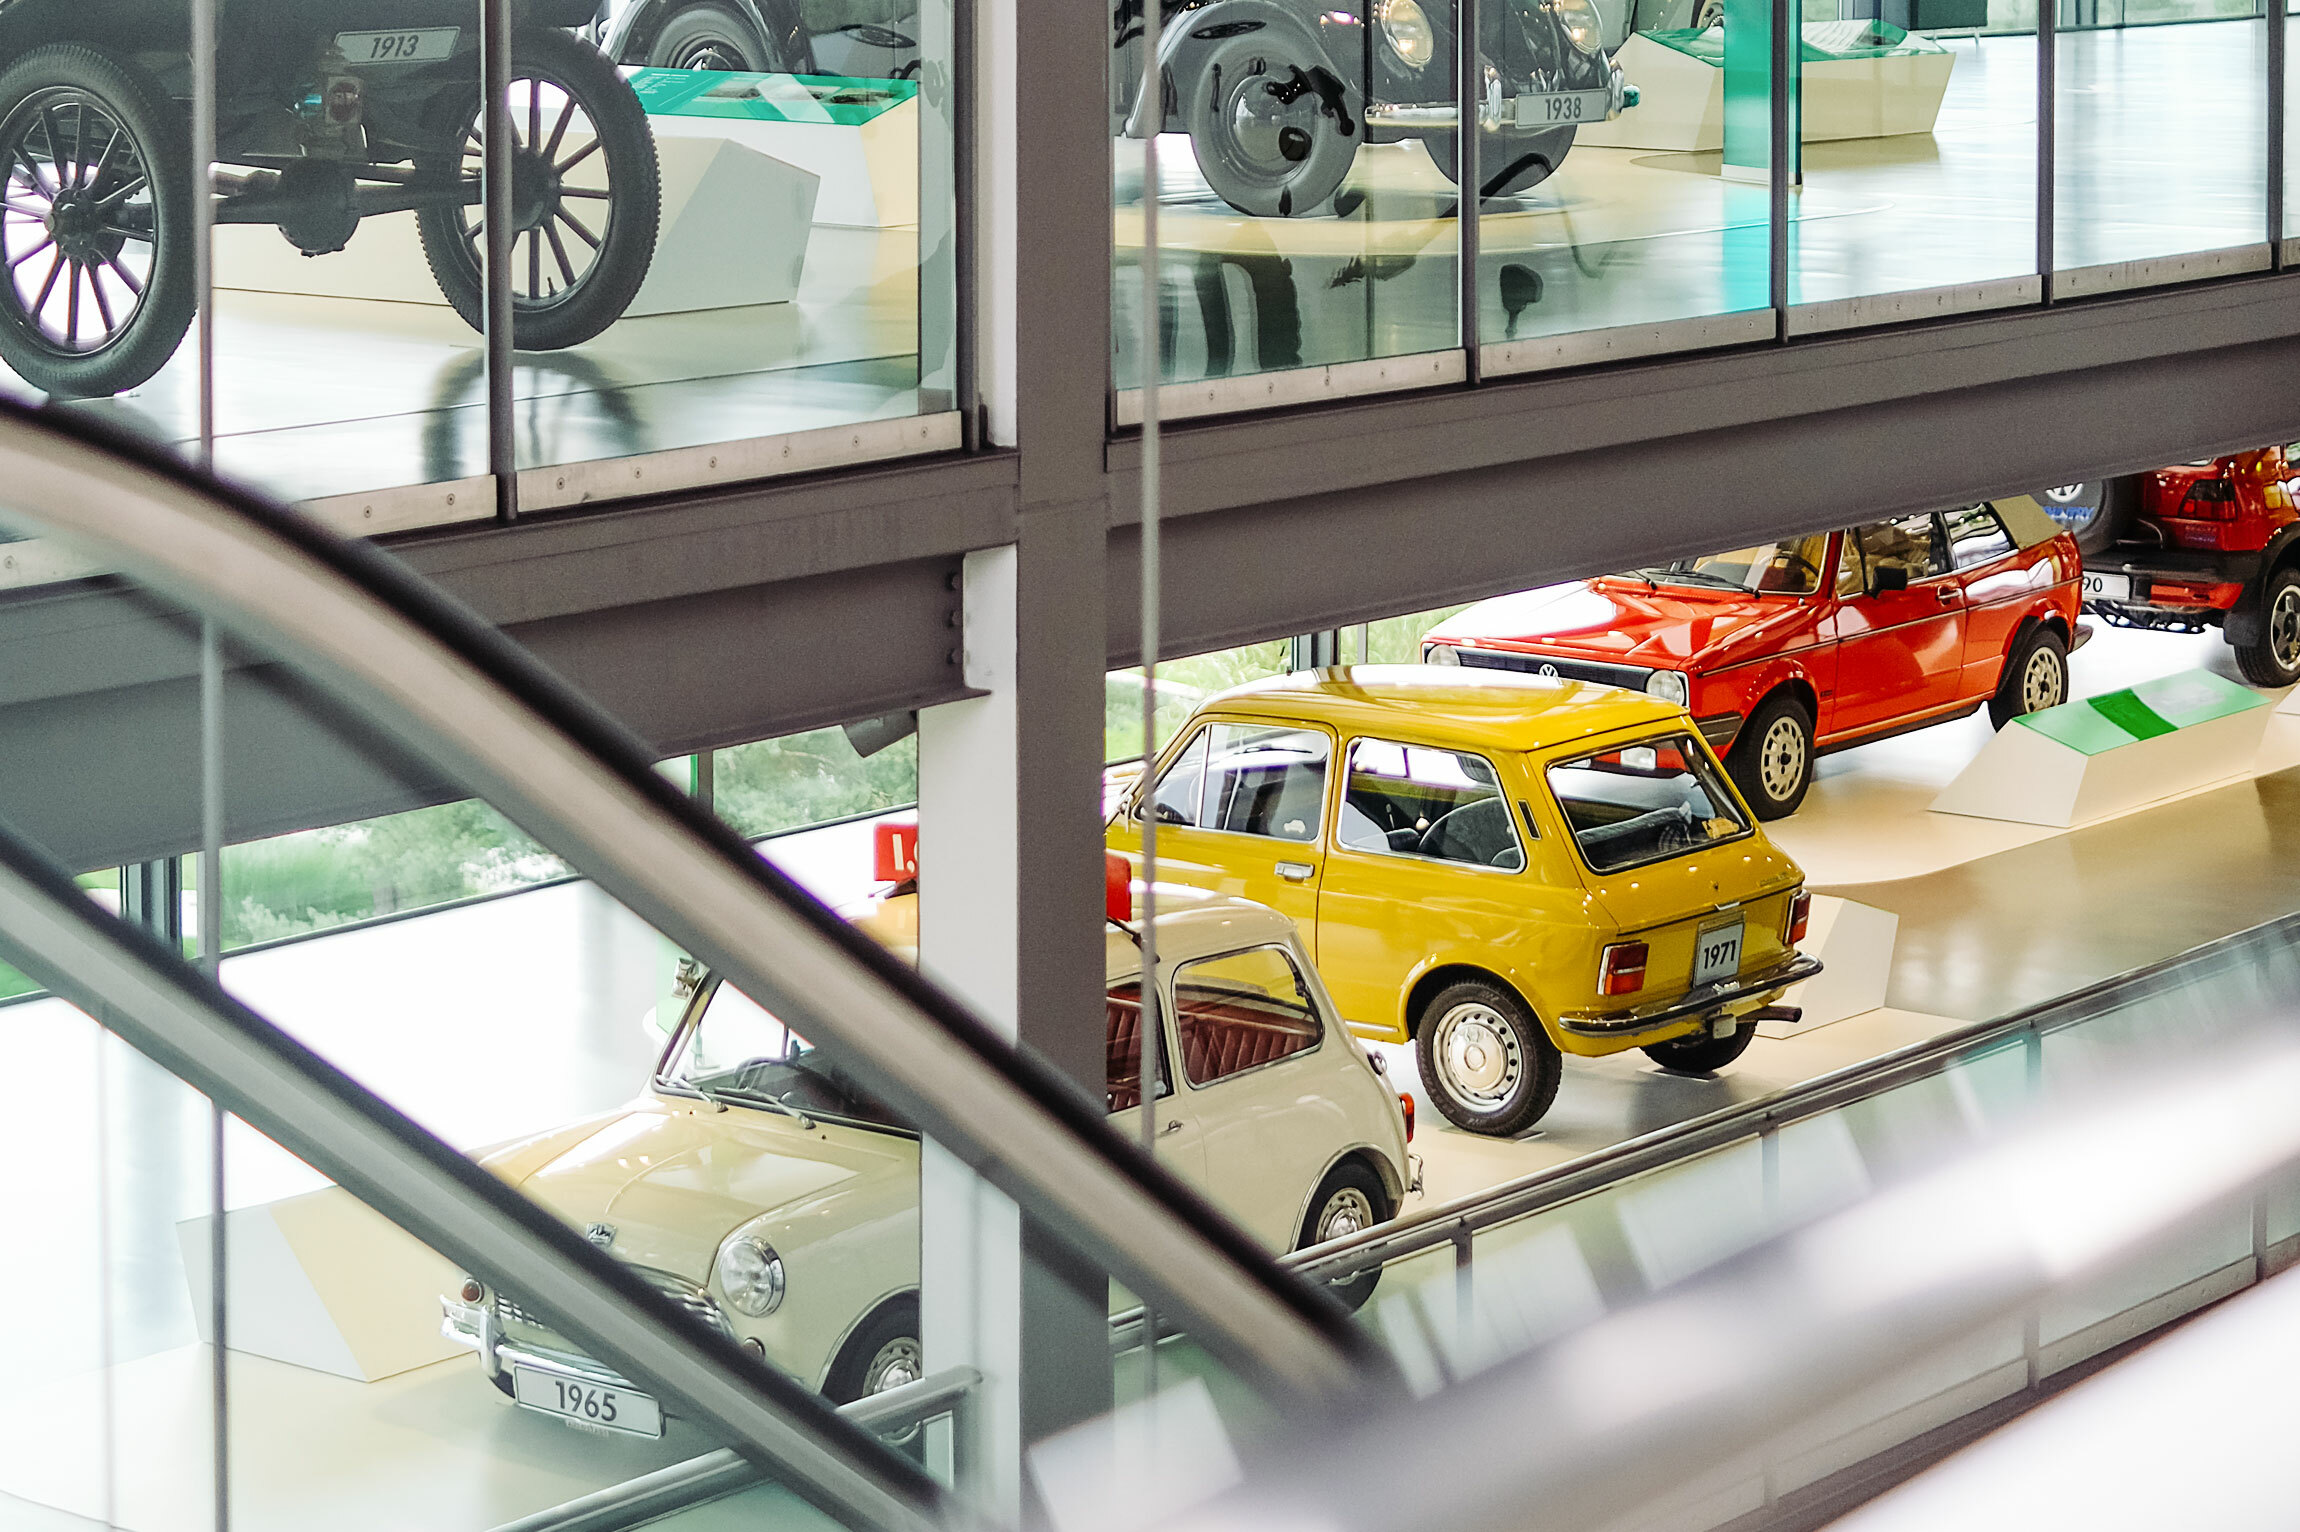 Foto in den Ausstellungsraum des Automuseums. Die Autos auf zwei sichtbaren Etagen haben Jahreszahlen auf den Nummernschildern.